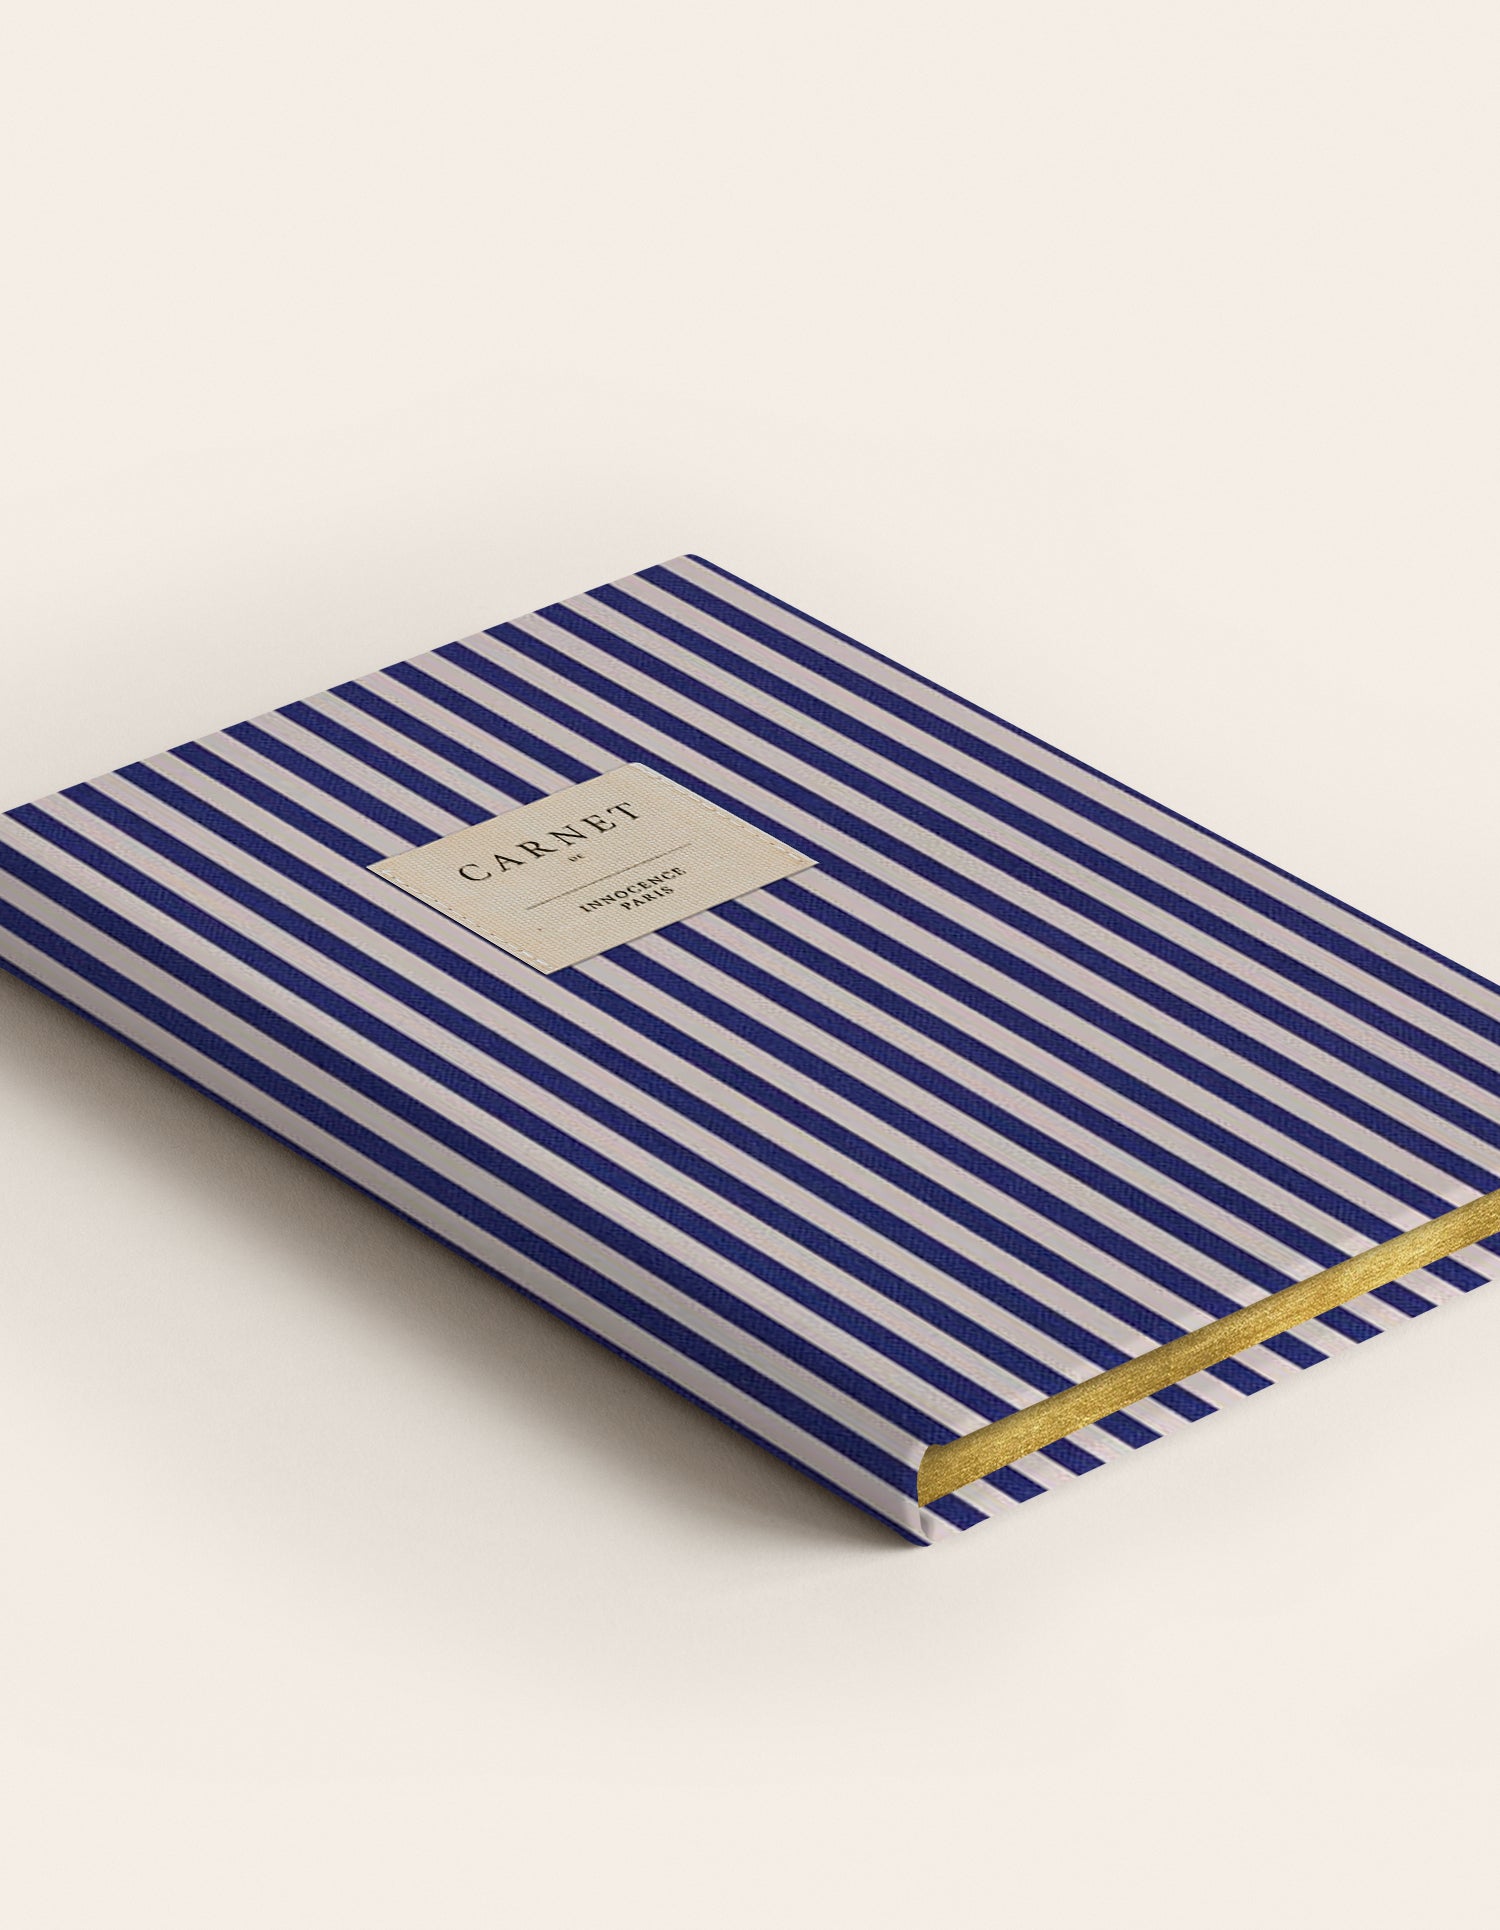 Navy blue notebook